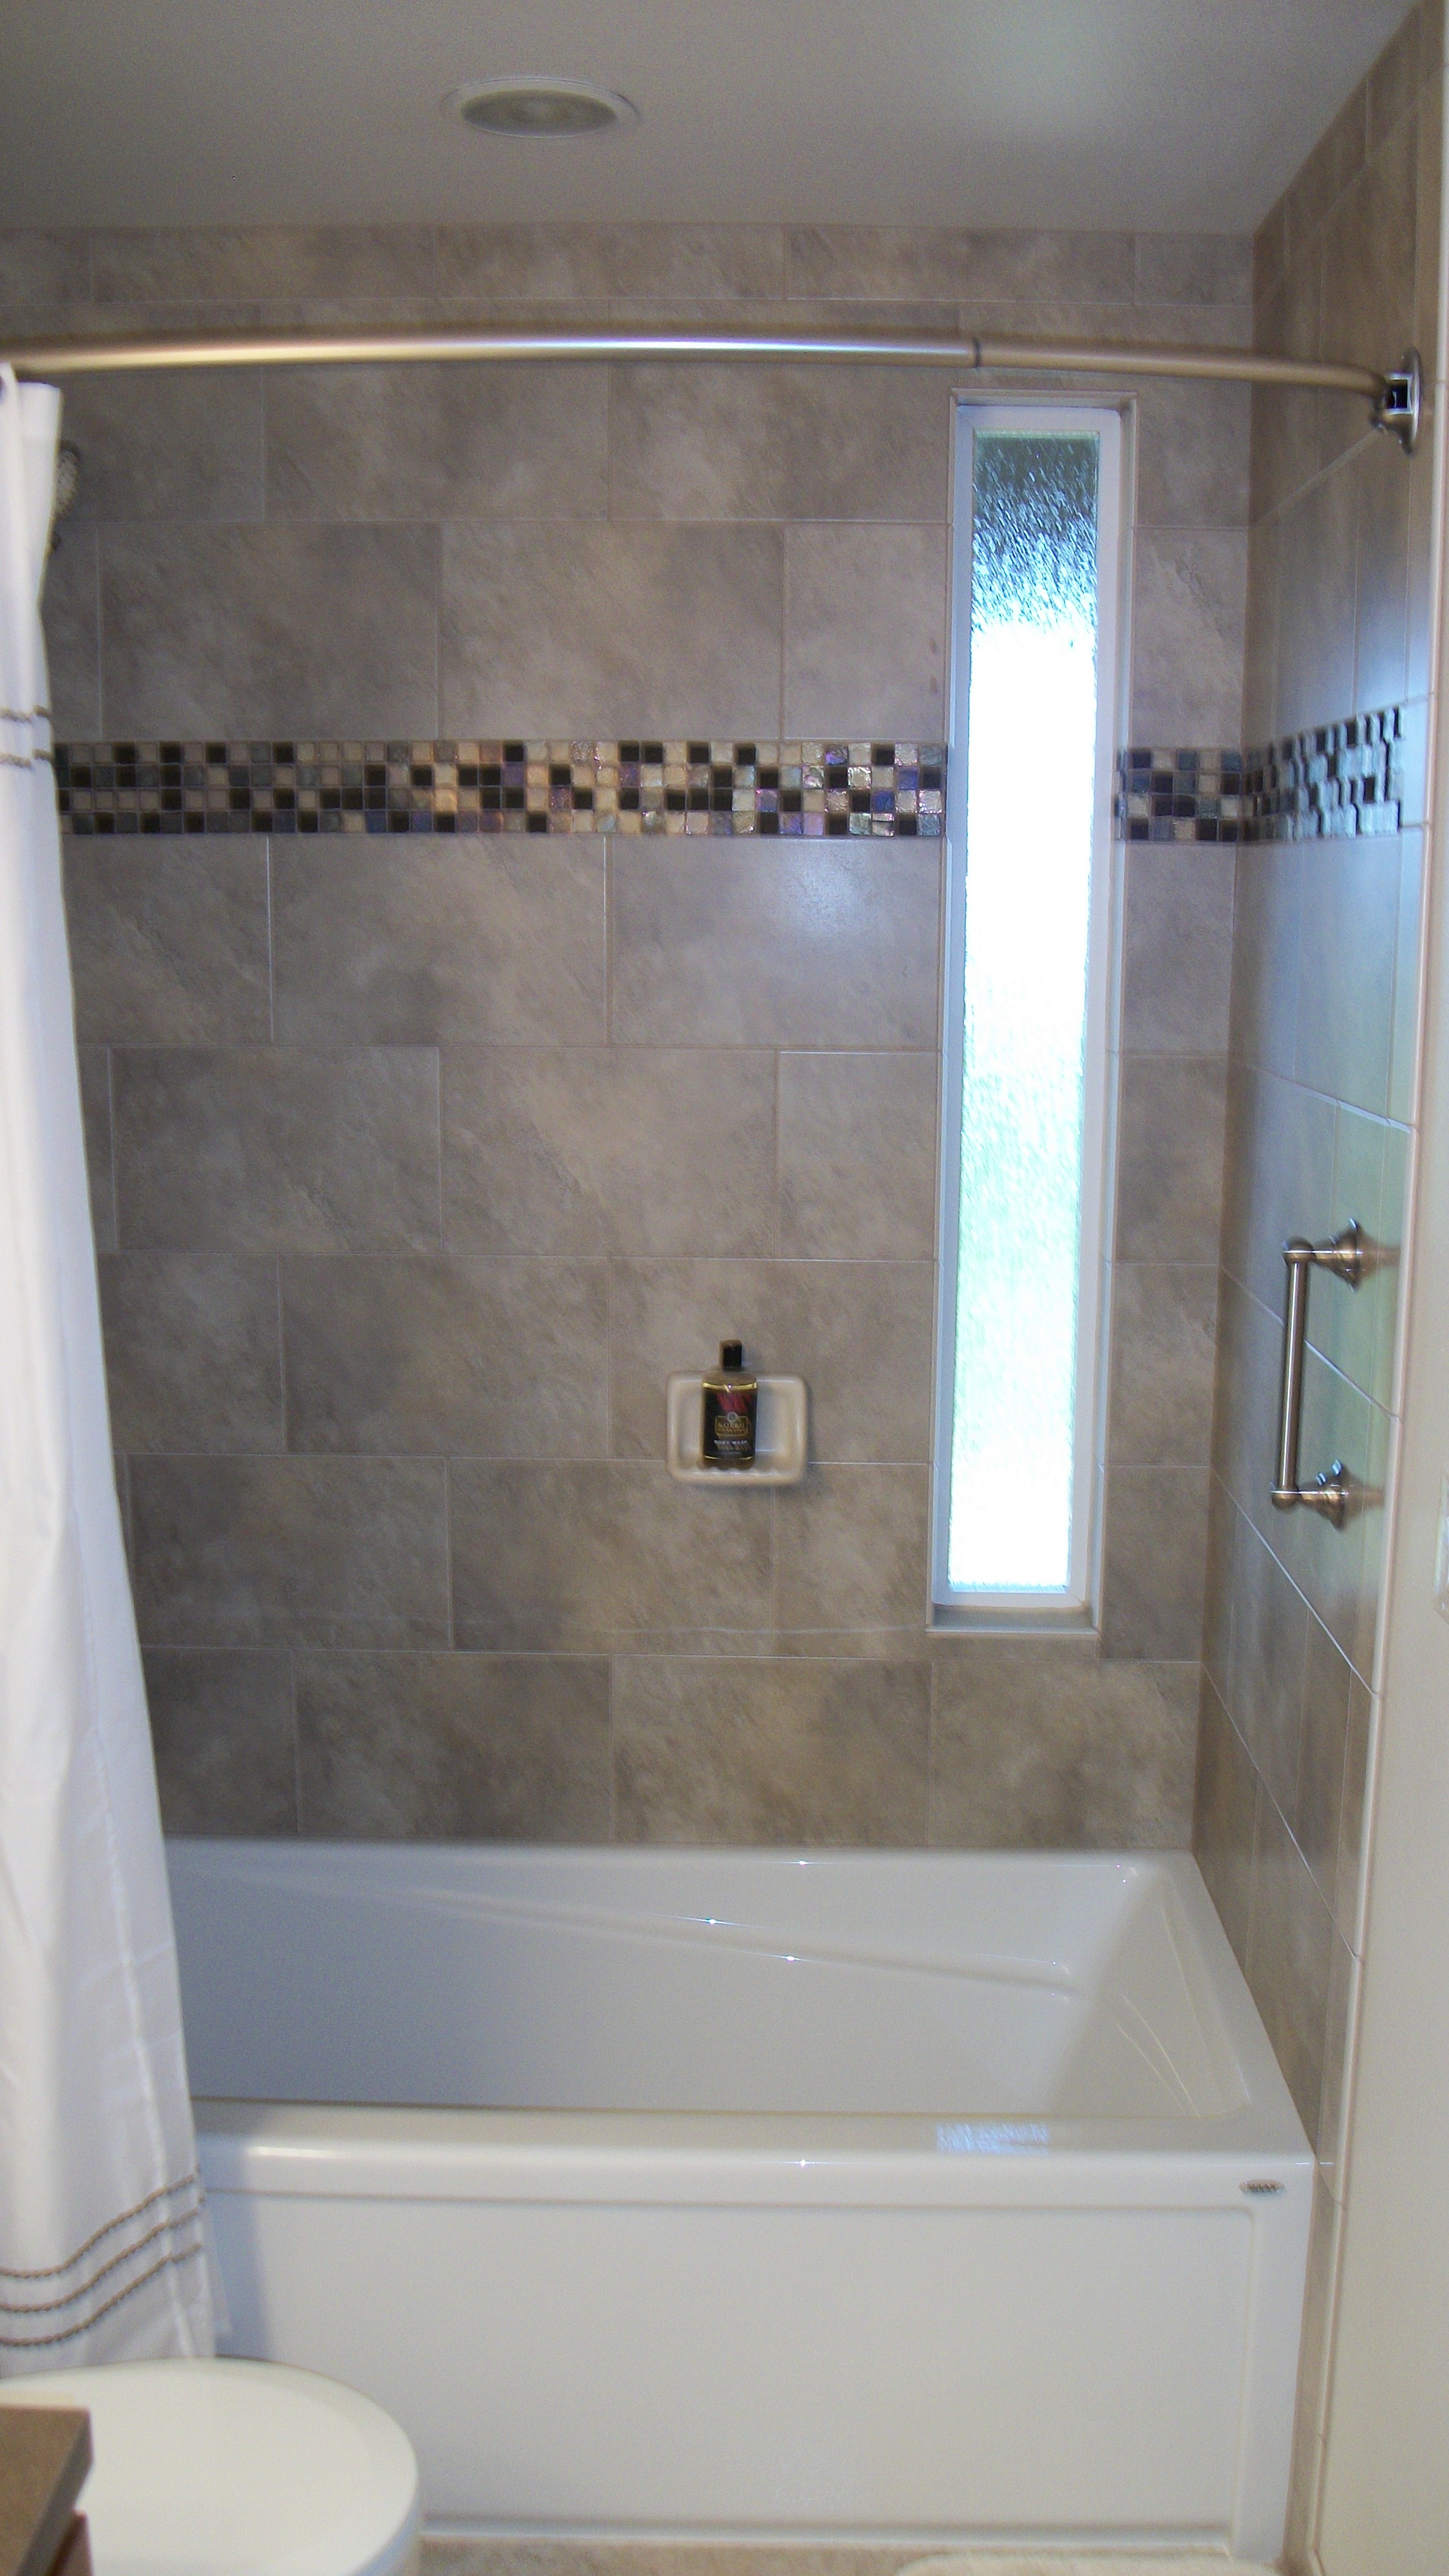 Lighting details in bath remodels | Rose Construction Inc